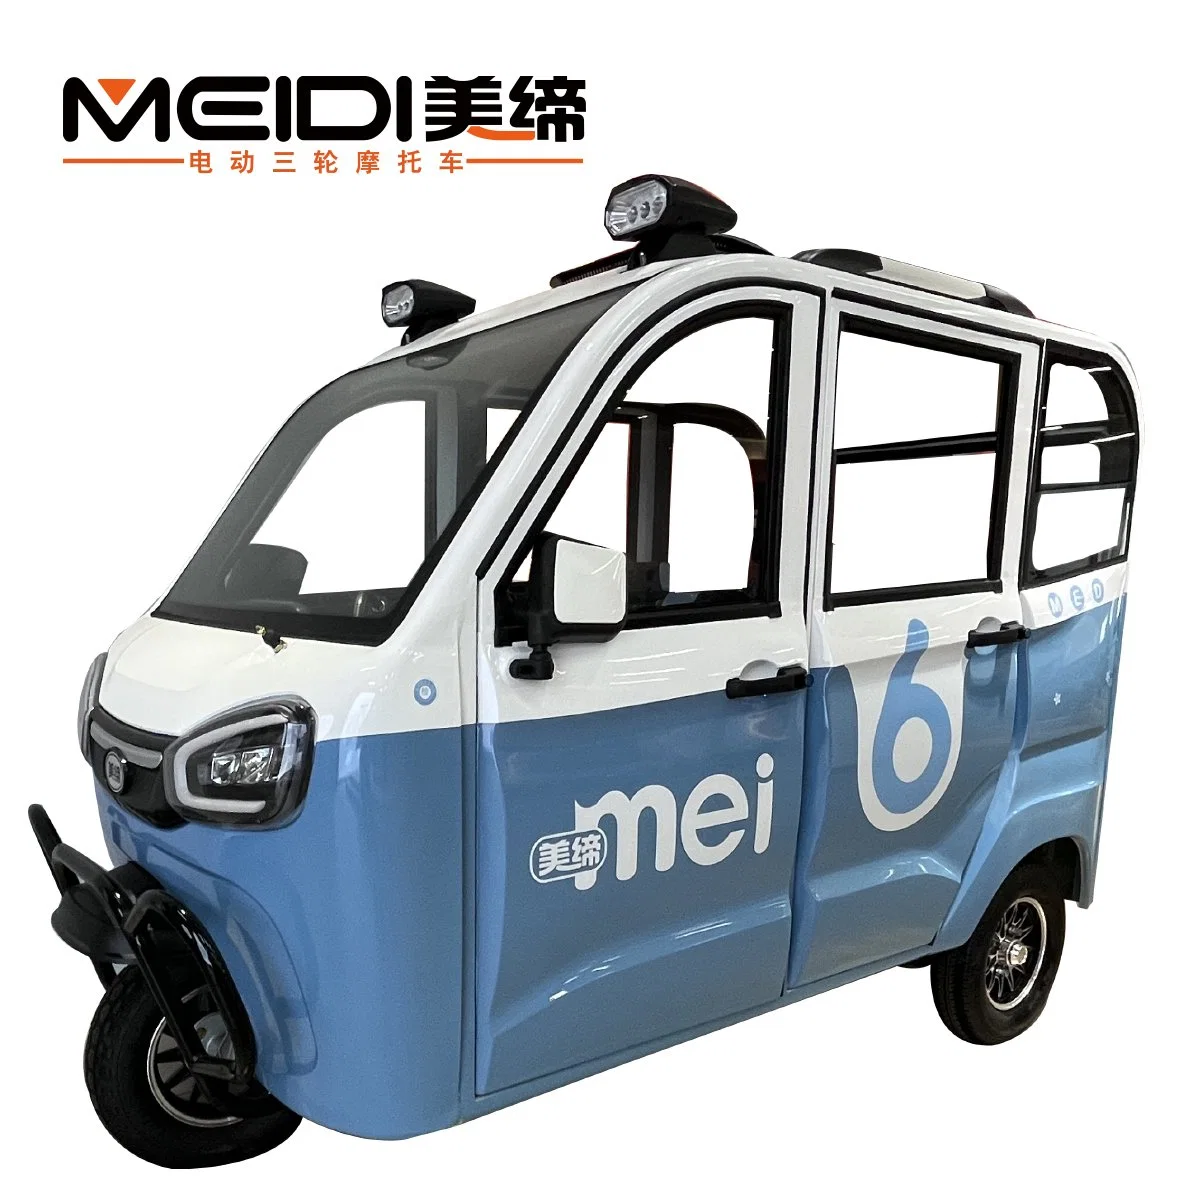 Meidi 1200W 1500W 1800W Solar Auto Rickshaw Auto batería operada Tricycle eléctrico cerrado